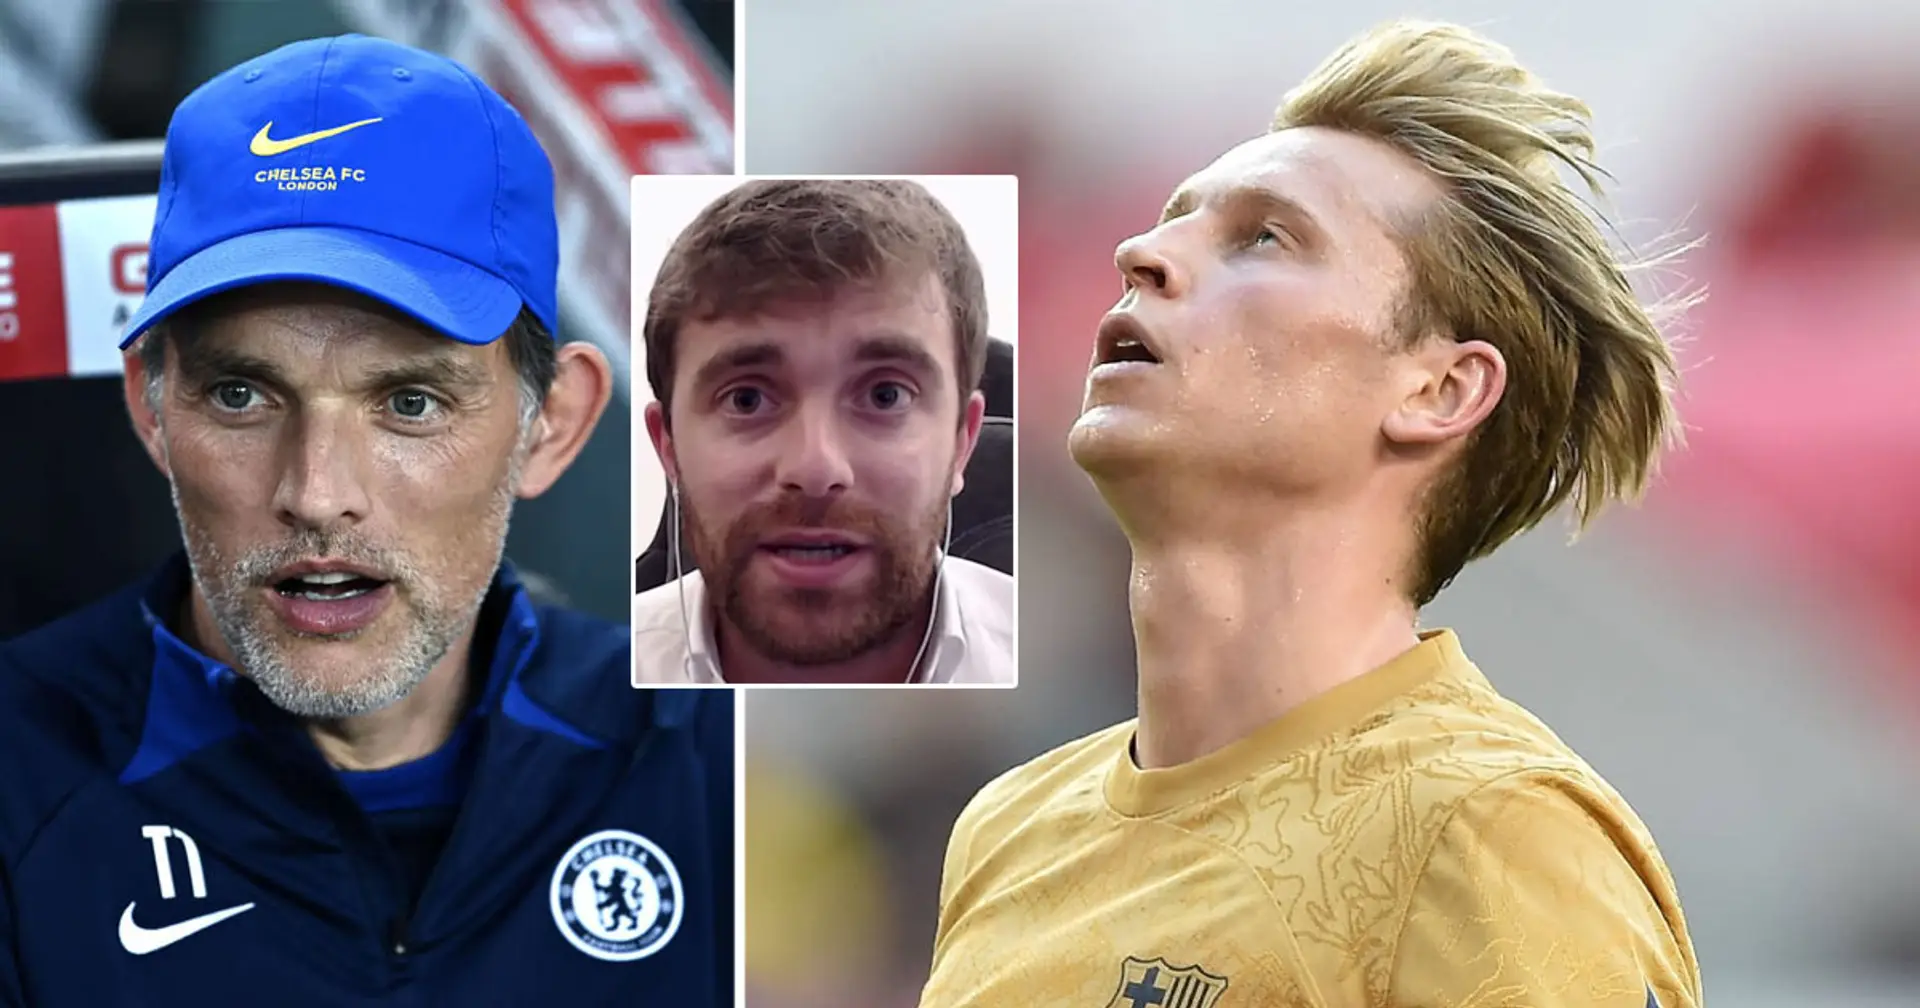 Chelsea se pone en contacto con De Jong, quiere su aprobación antes de presentar una oferta: Fabrizio Romano